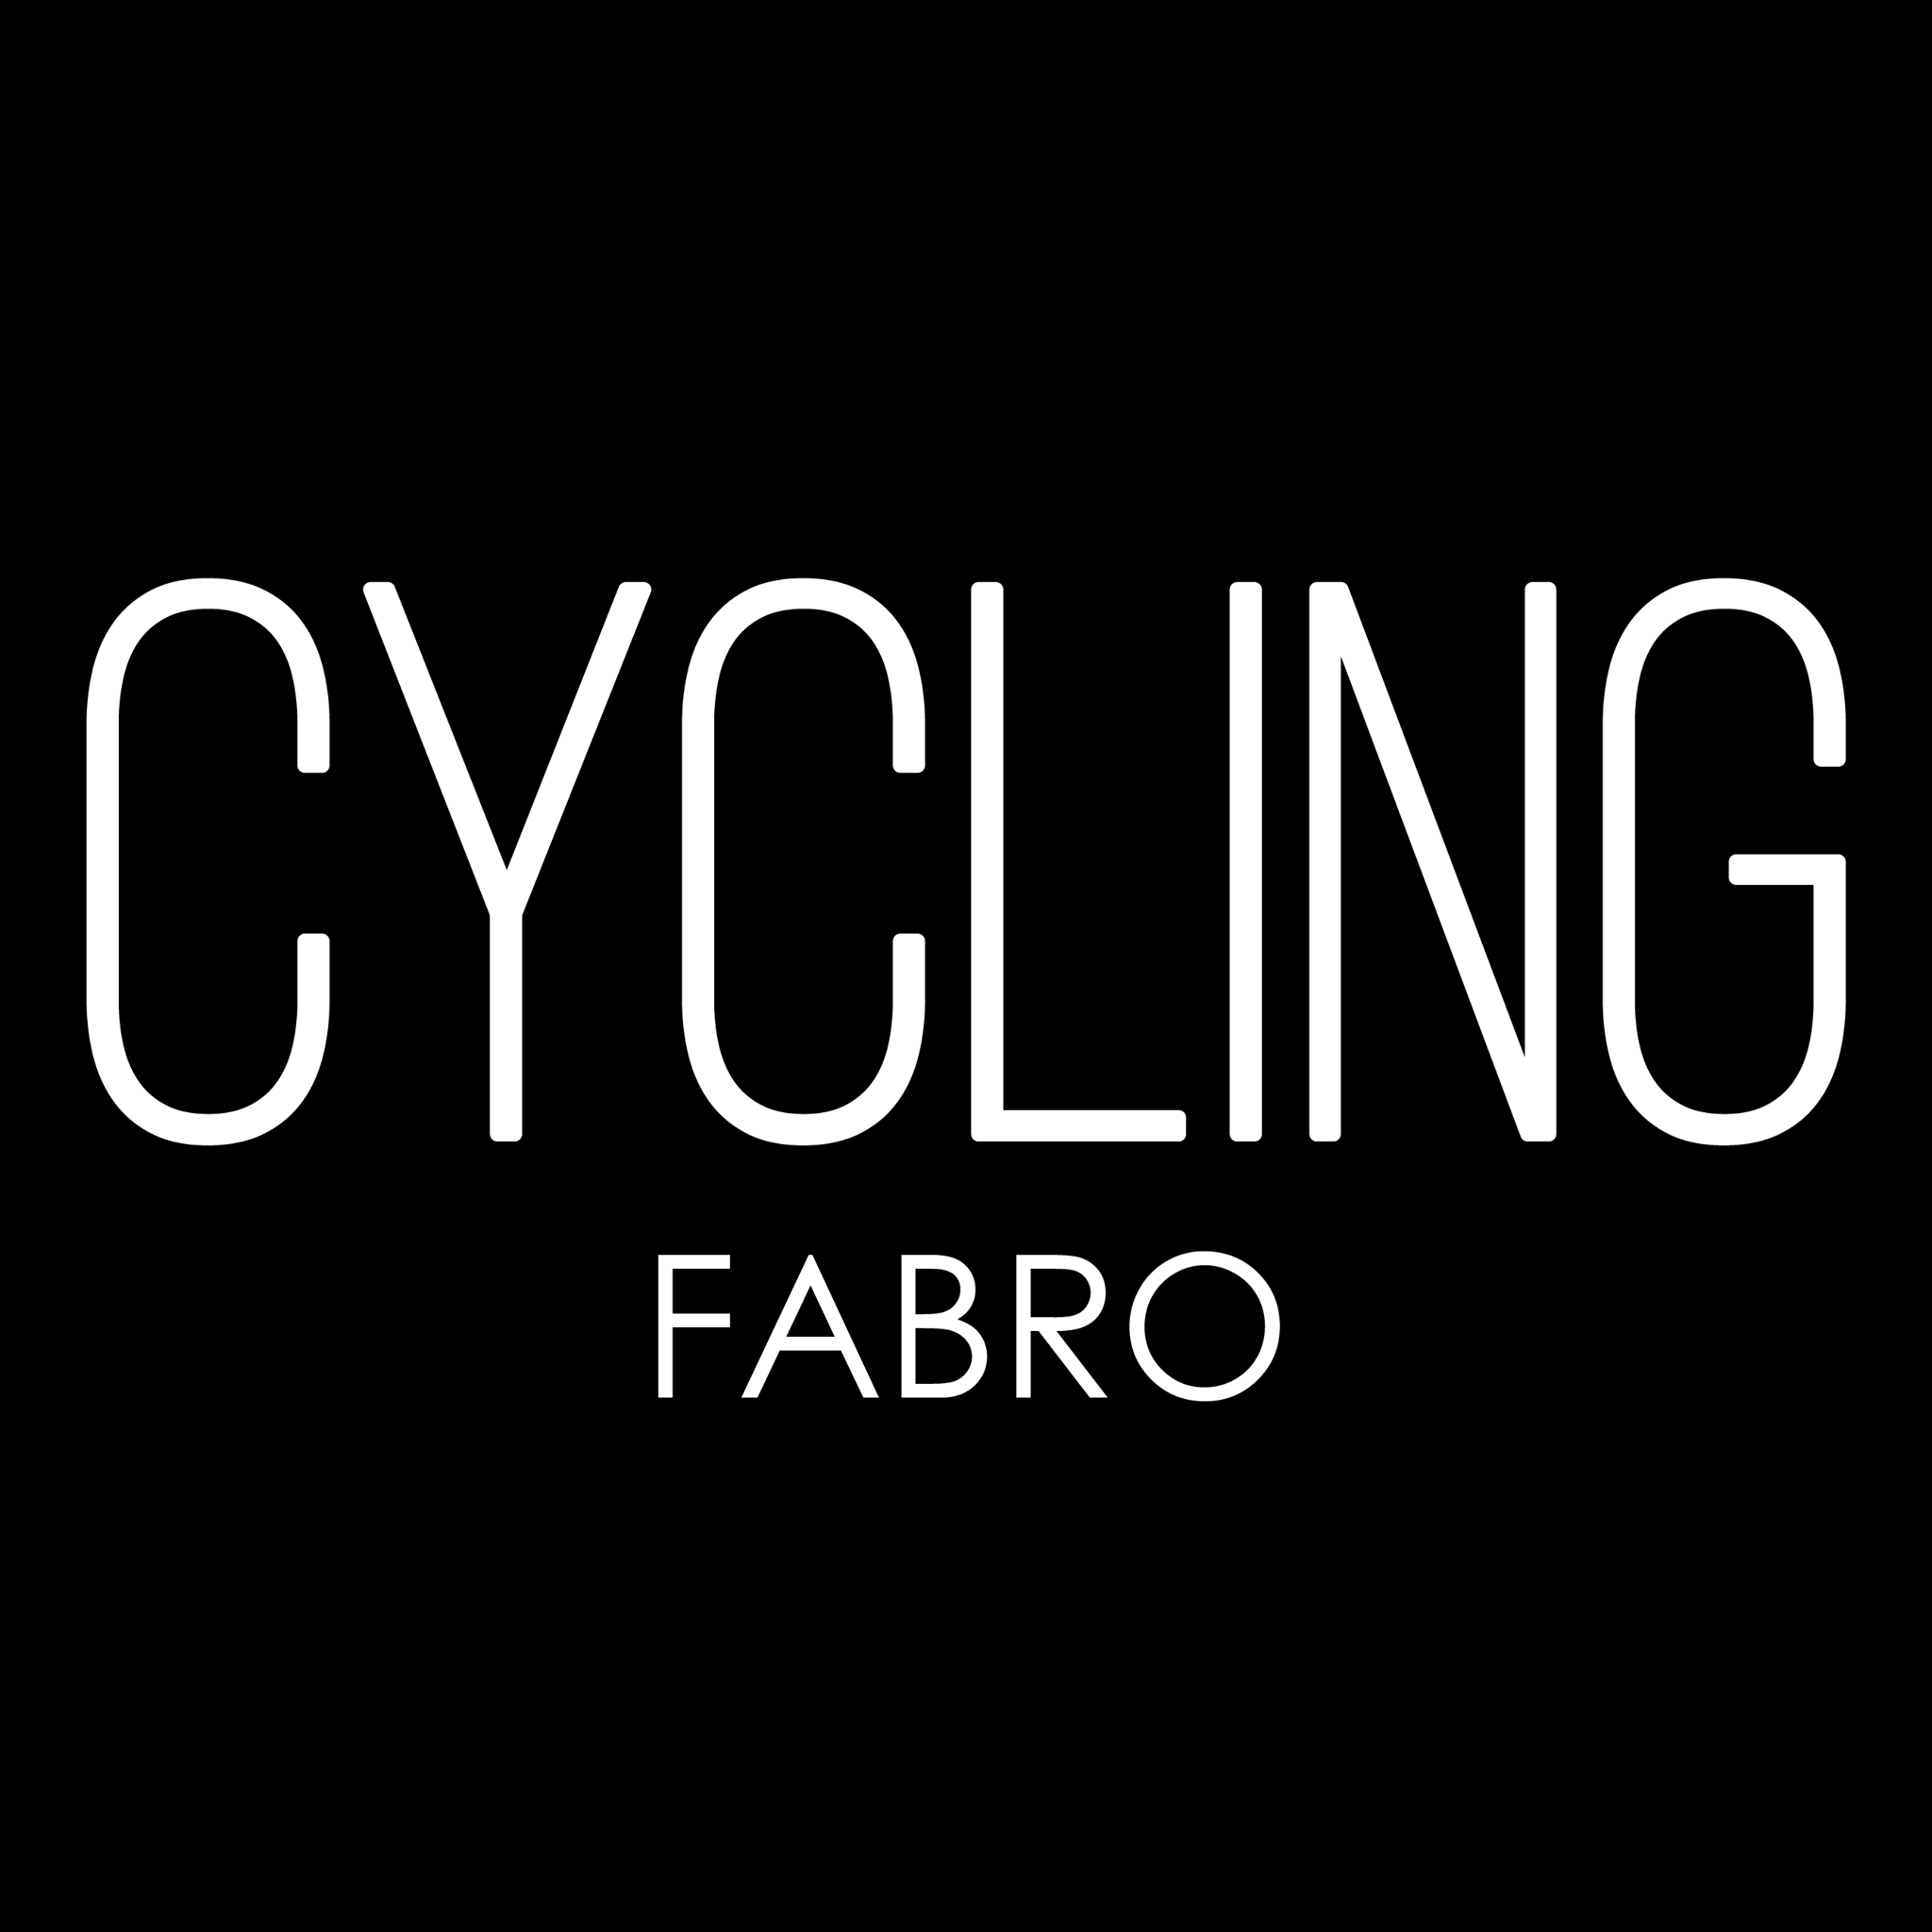 Cycling Fabro